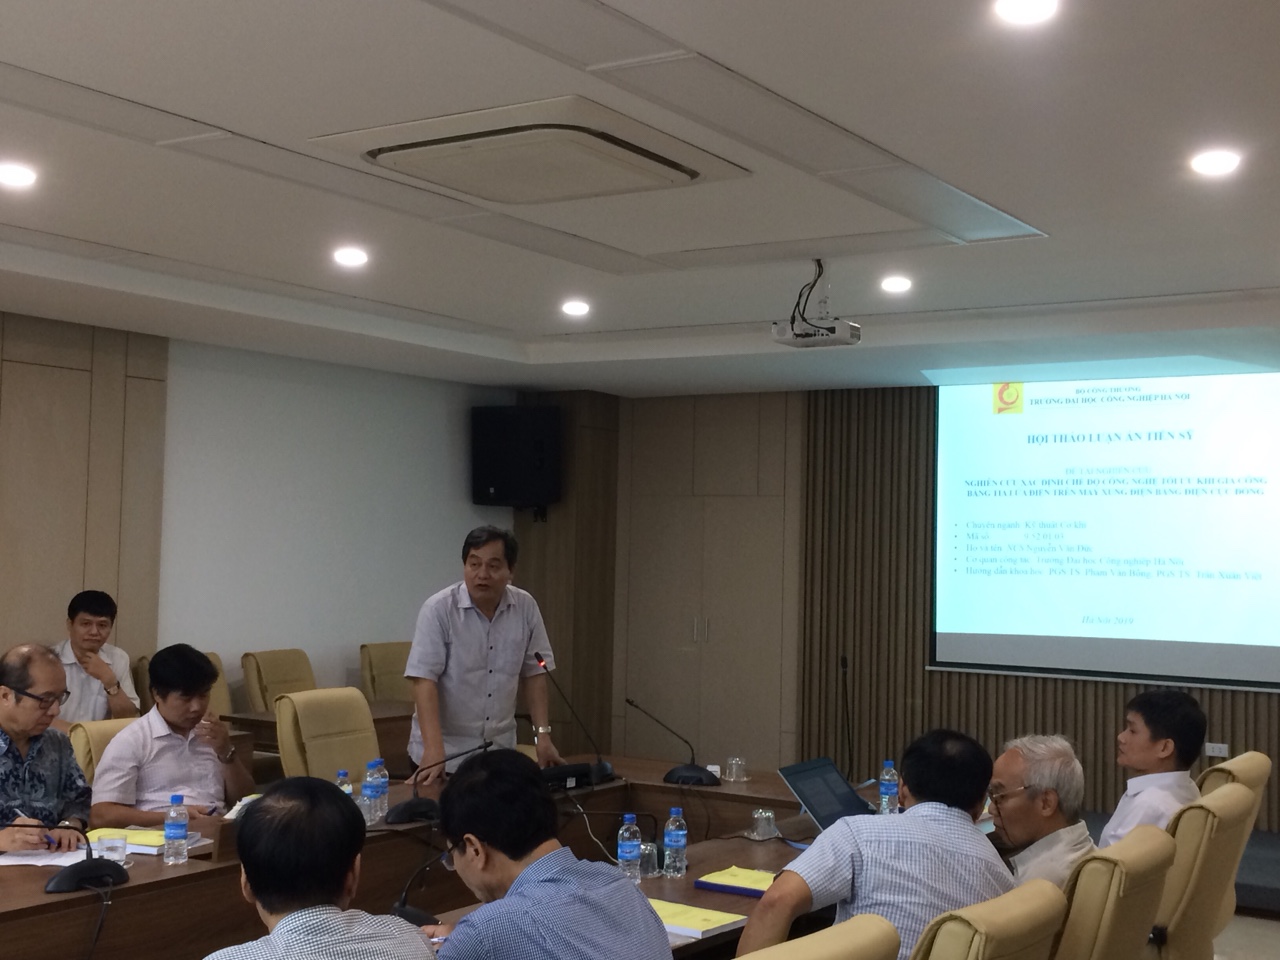 Ngày 18/8/2019 Trung tâm đào tạo Sau đại học phối hợp với Khoa Co khí tổ chức Hội thảo khoa học cho NCS Nguyễn Văn Đức, chuyên ngành Cơ khí khóa 1.